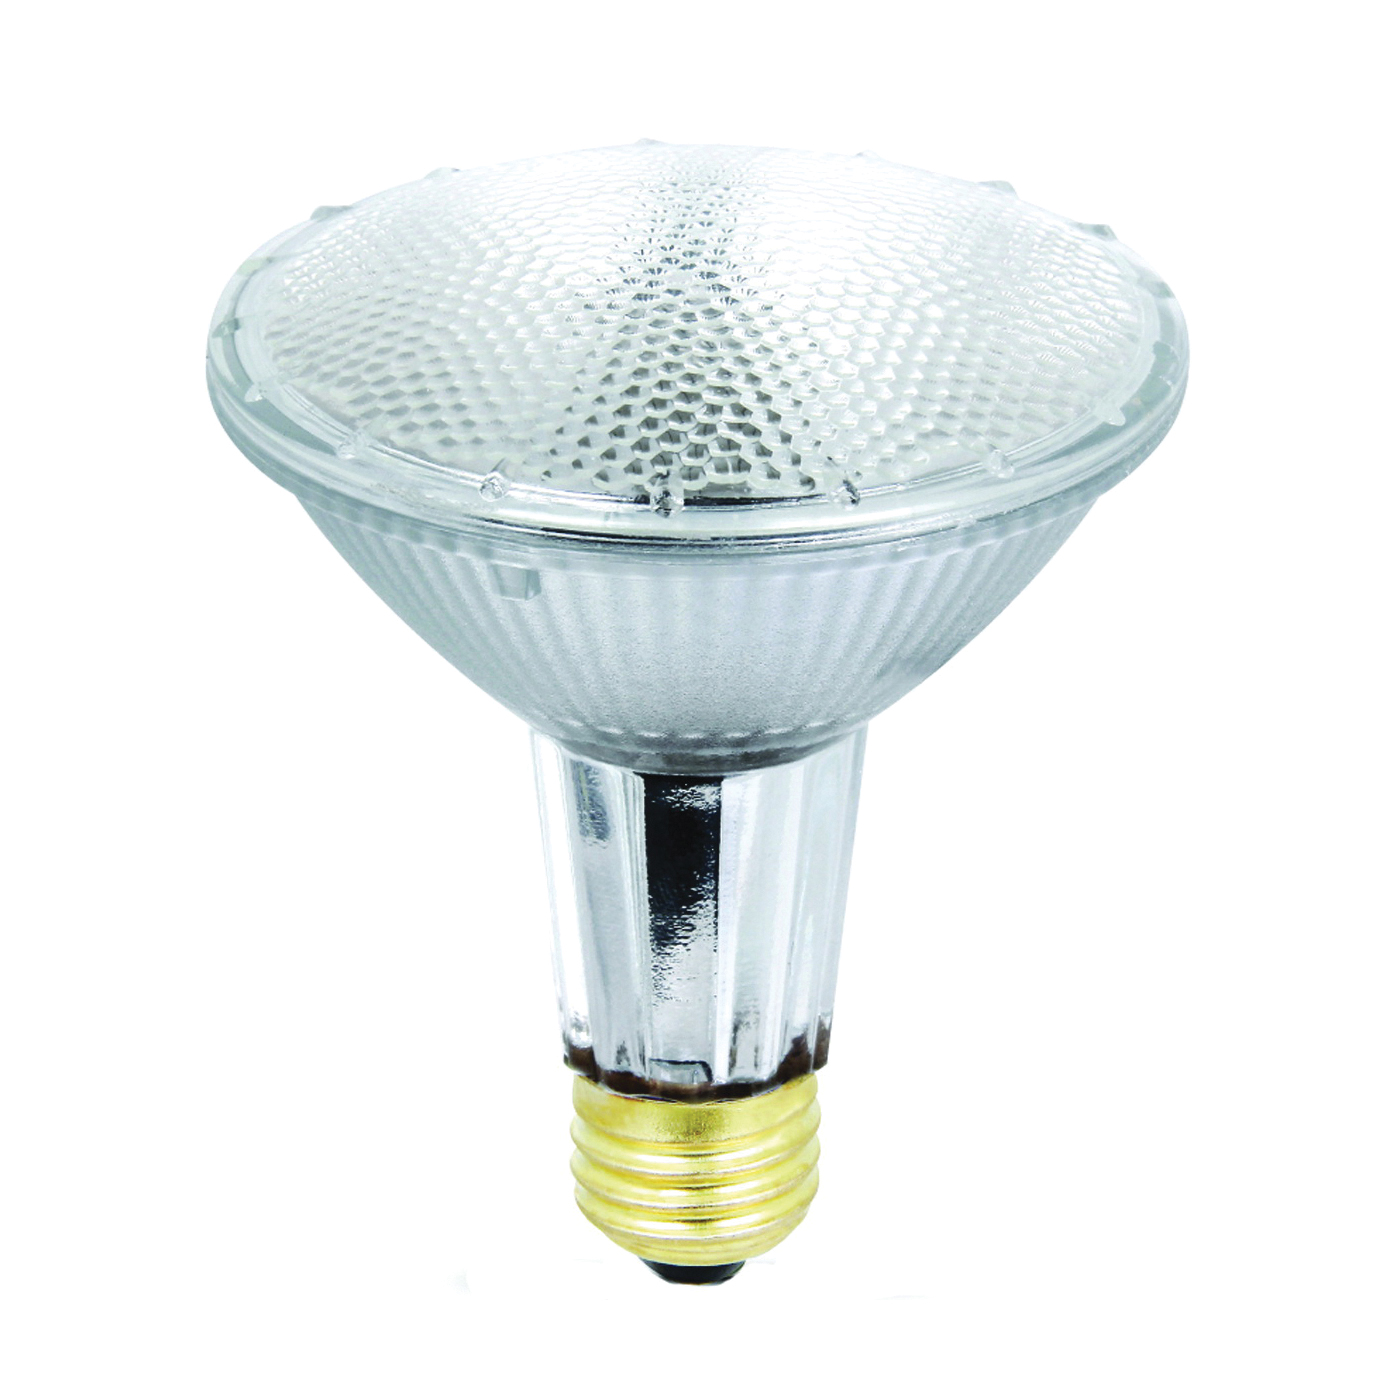 35PAR30/L/QFL/ES Halogen Bulb, 35 W, Medium E26 Lamp Base, PAR30 Lamp, Soft White Light, 560 Lumens